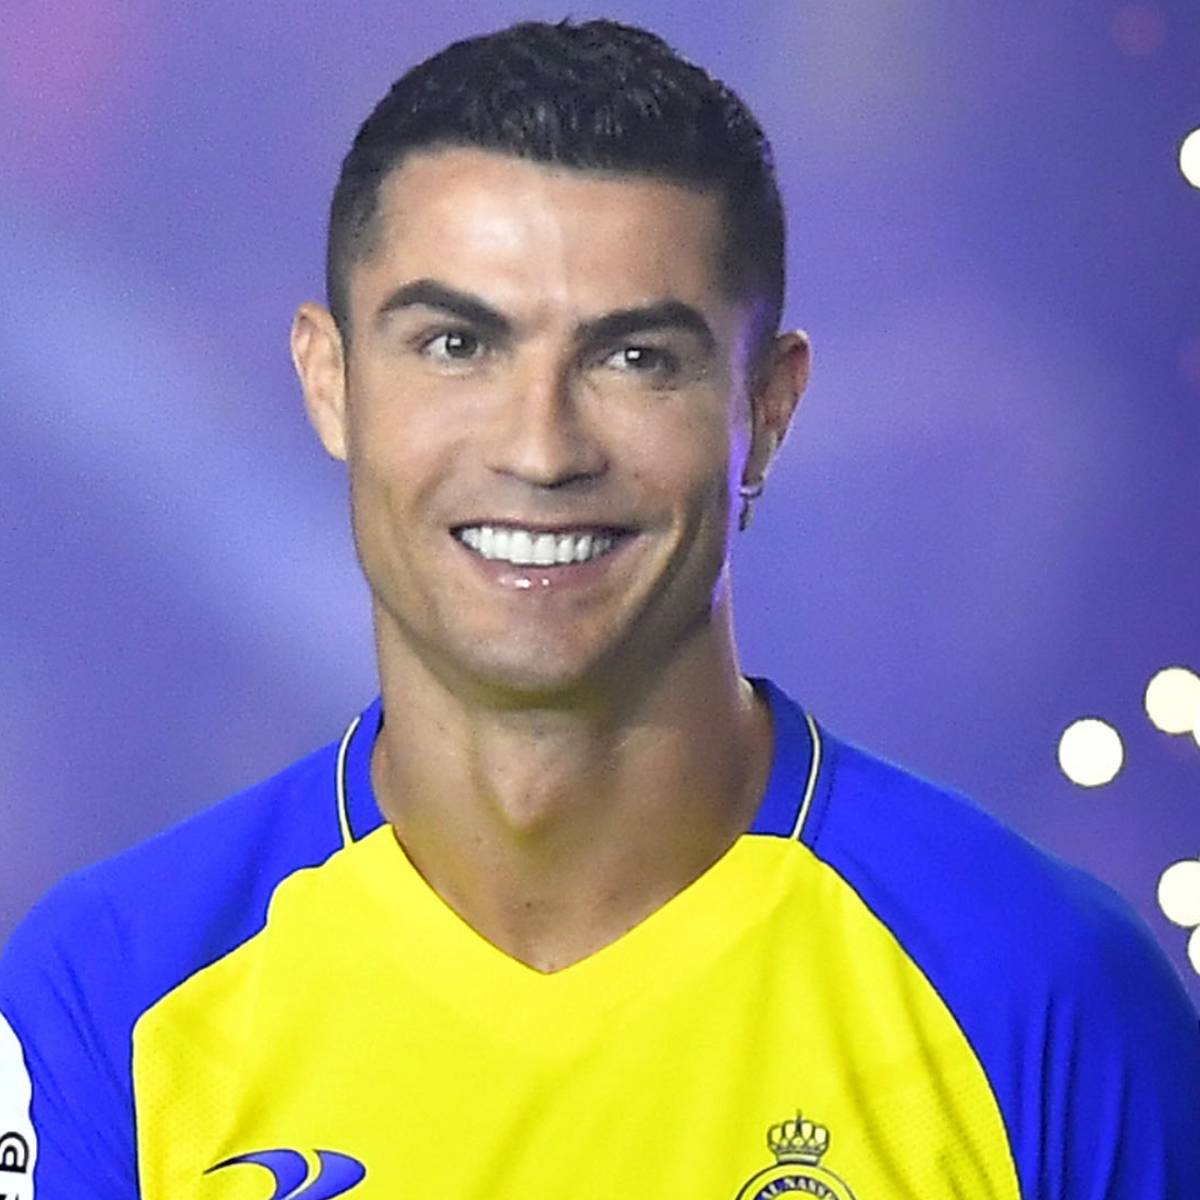 Ronaldo(CR7) và 1 cuộc hành trình trở thành huyền thoại